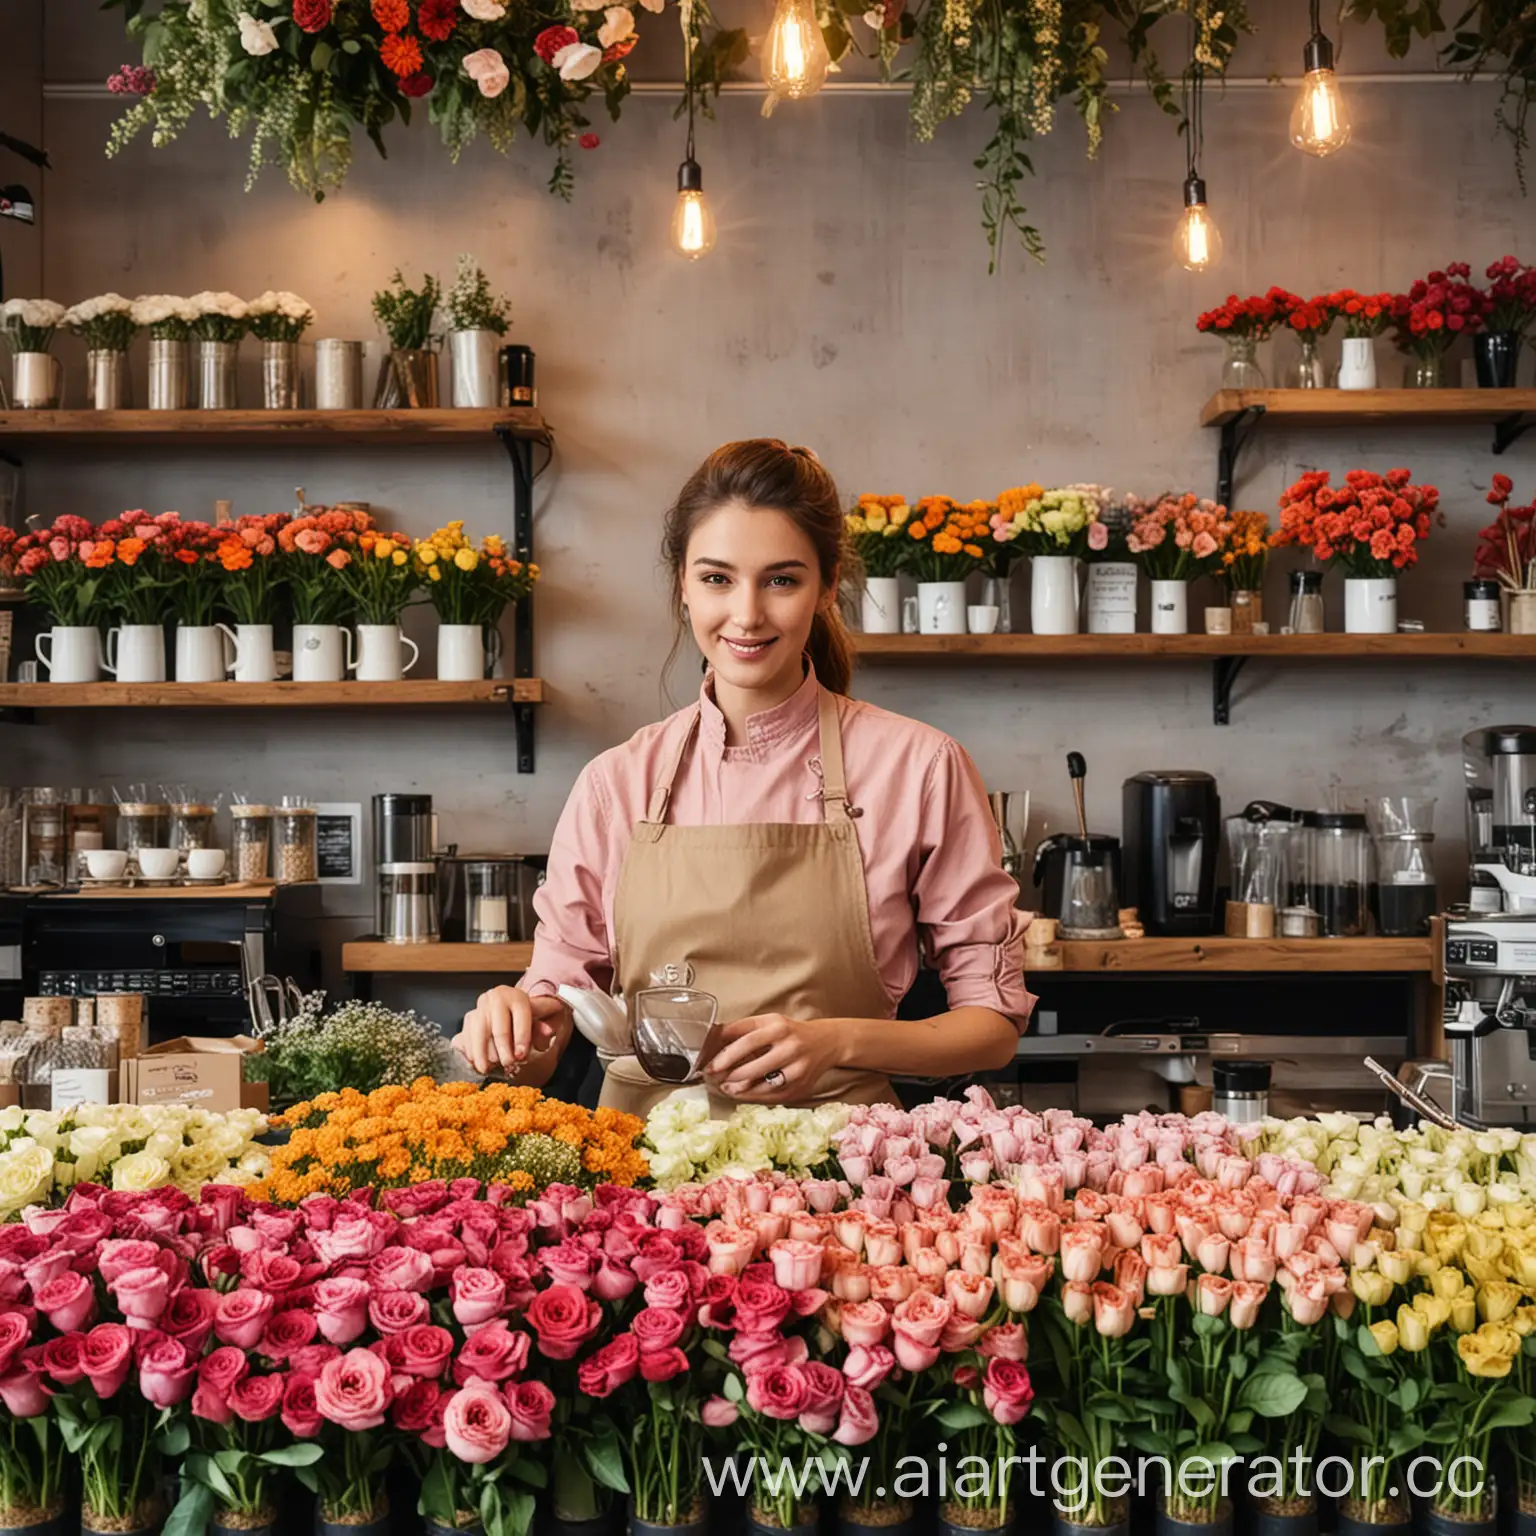 цветочный магазин, в котором наливает кофе бариста и продаются самые красивые цветы